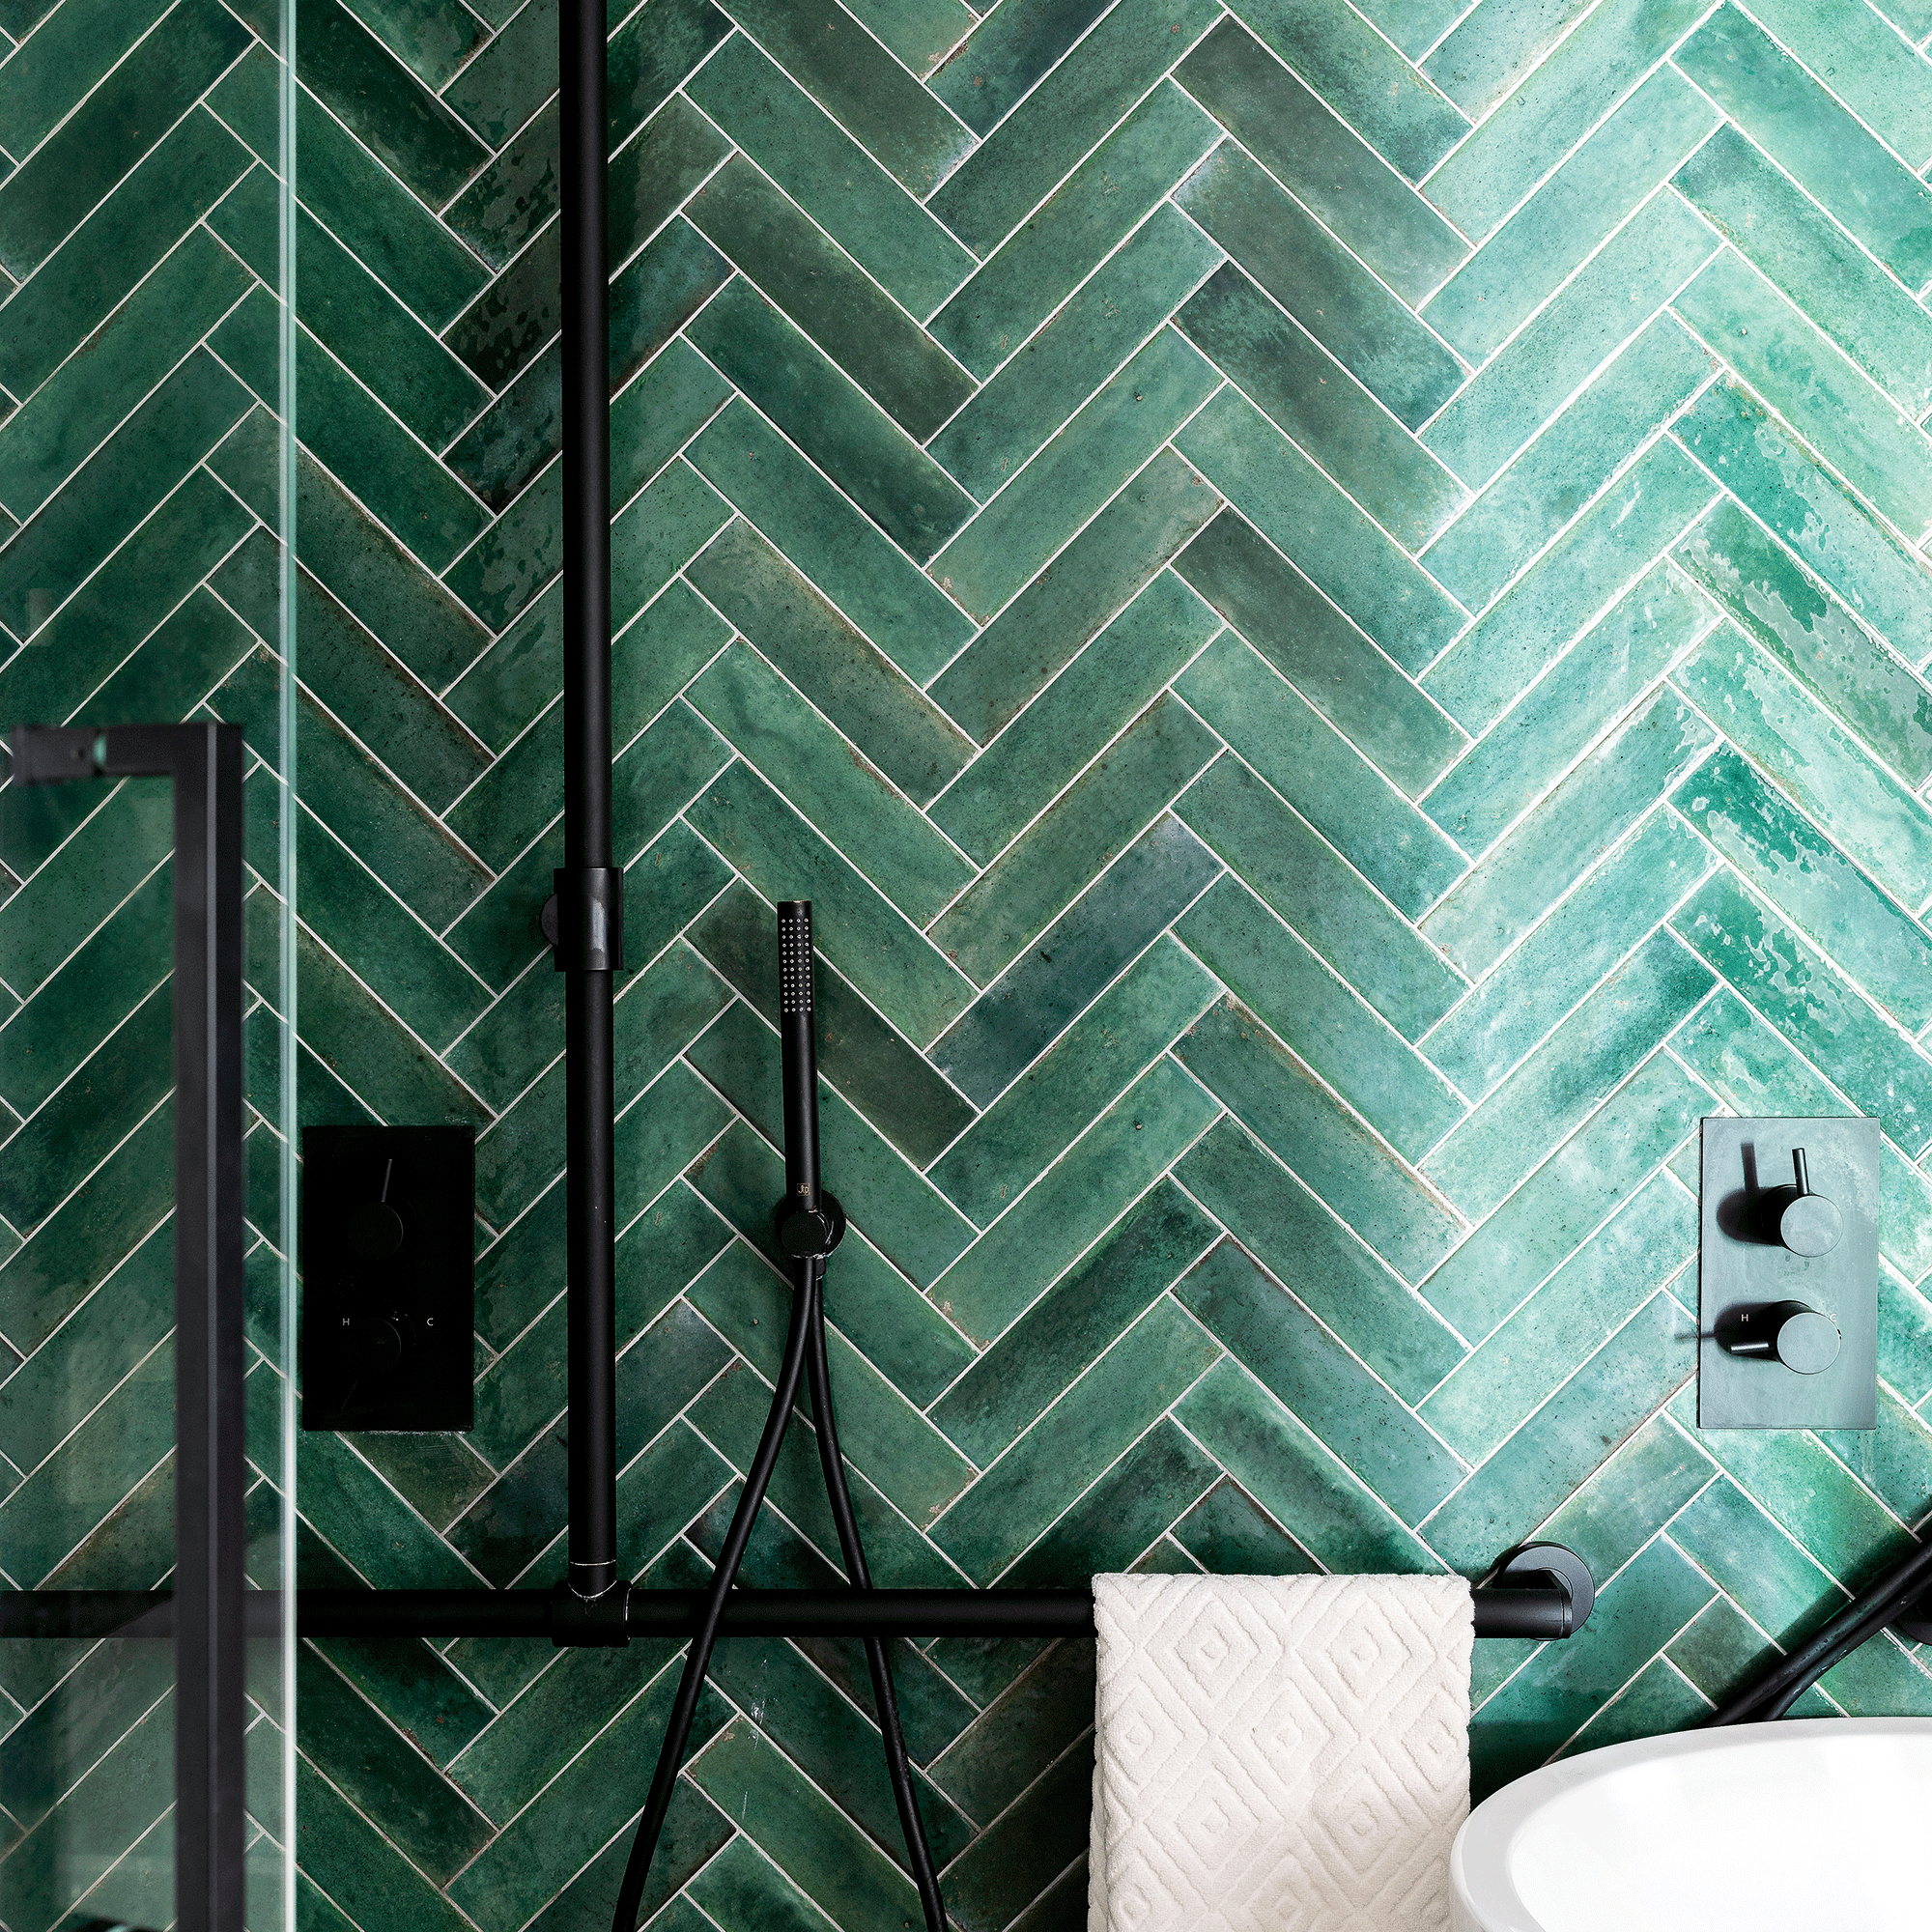 Green tiles in a herringbone layout